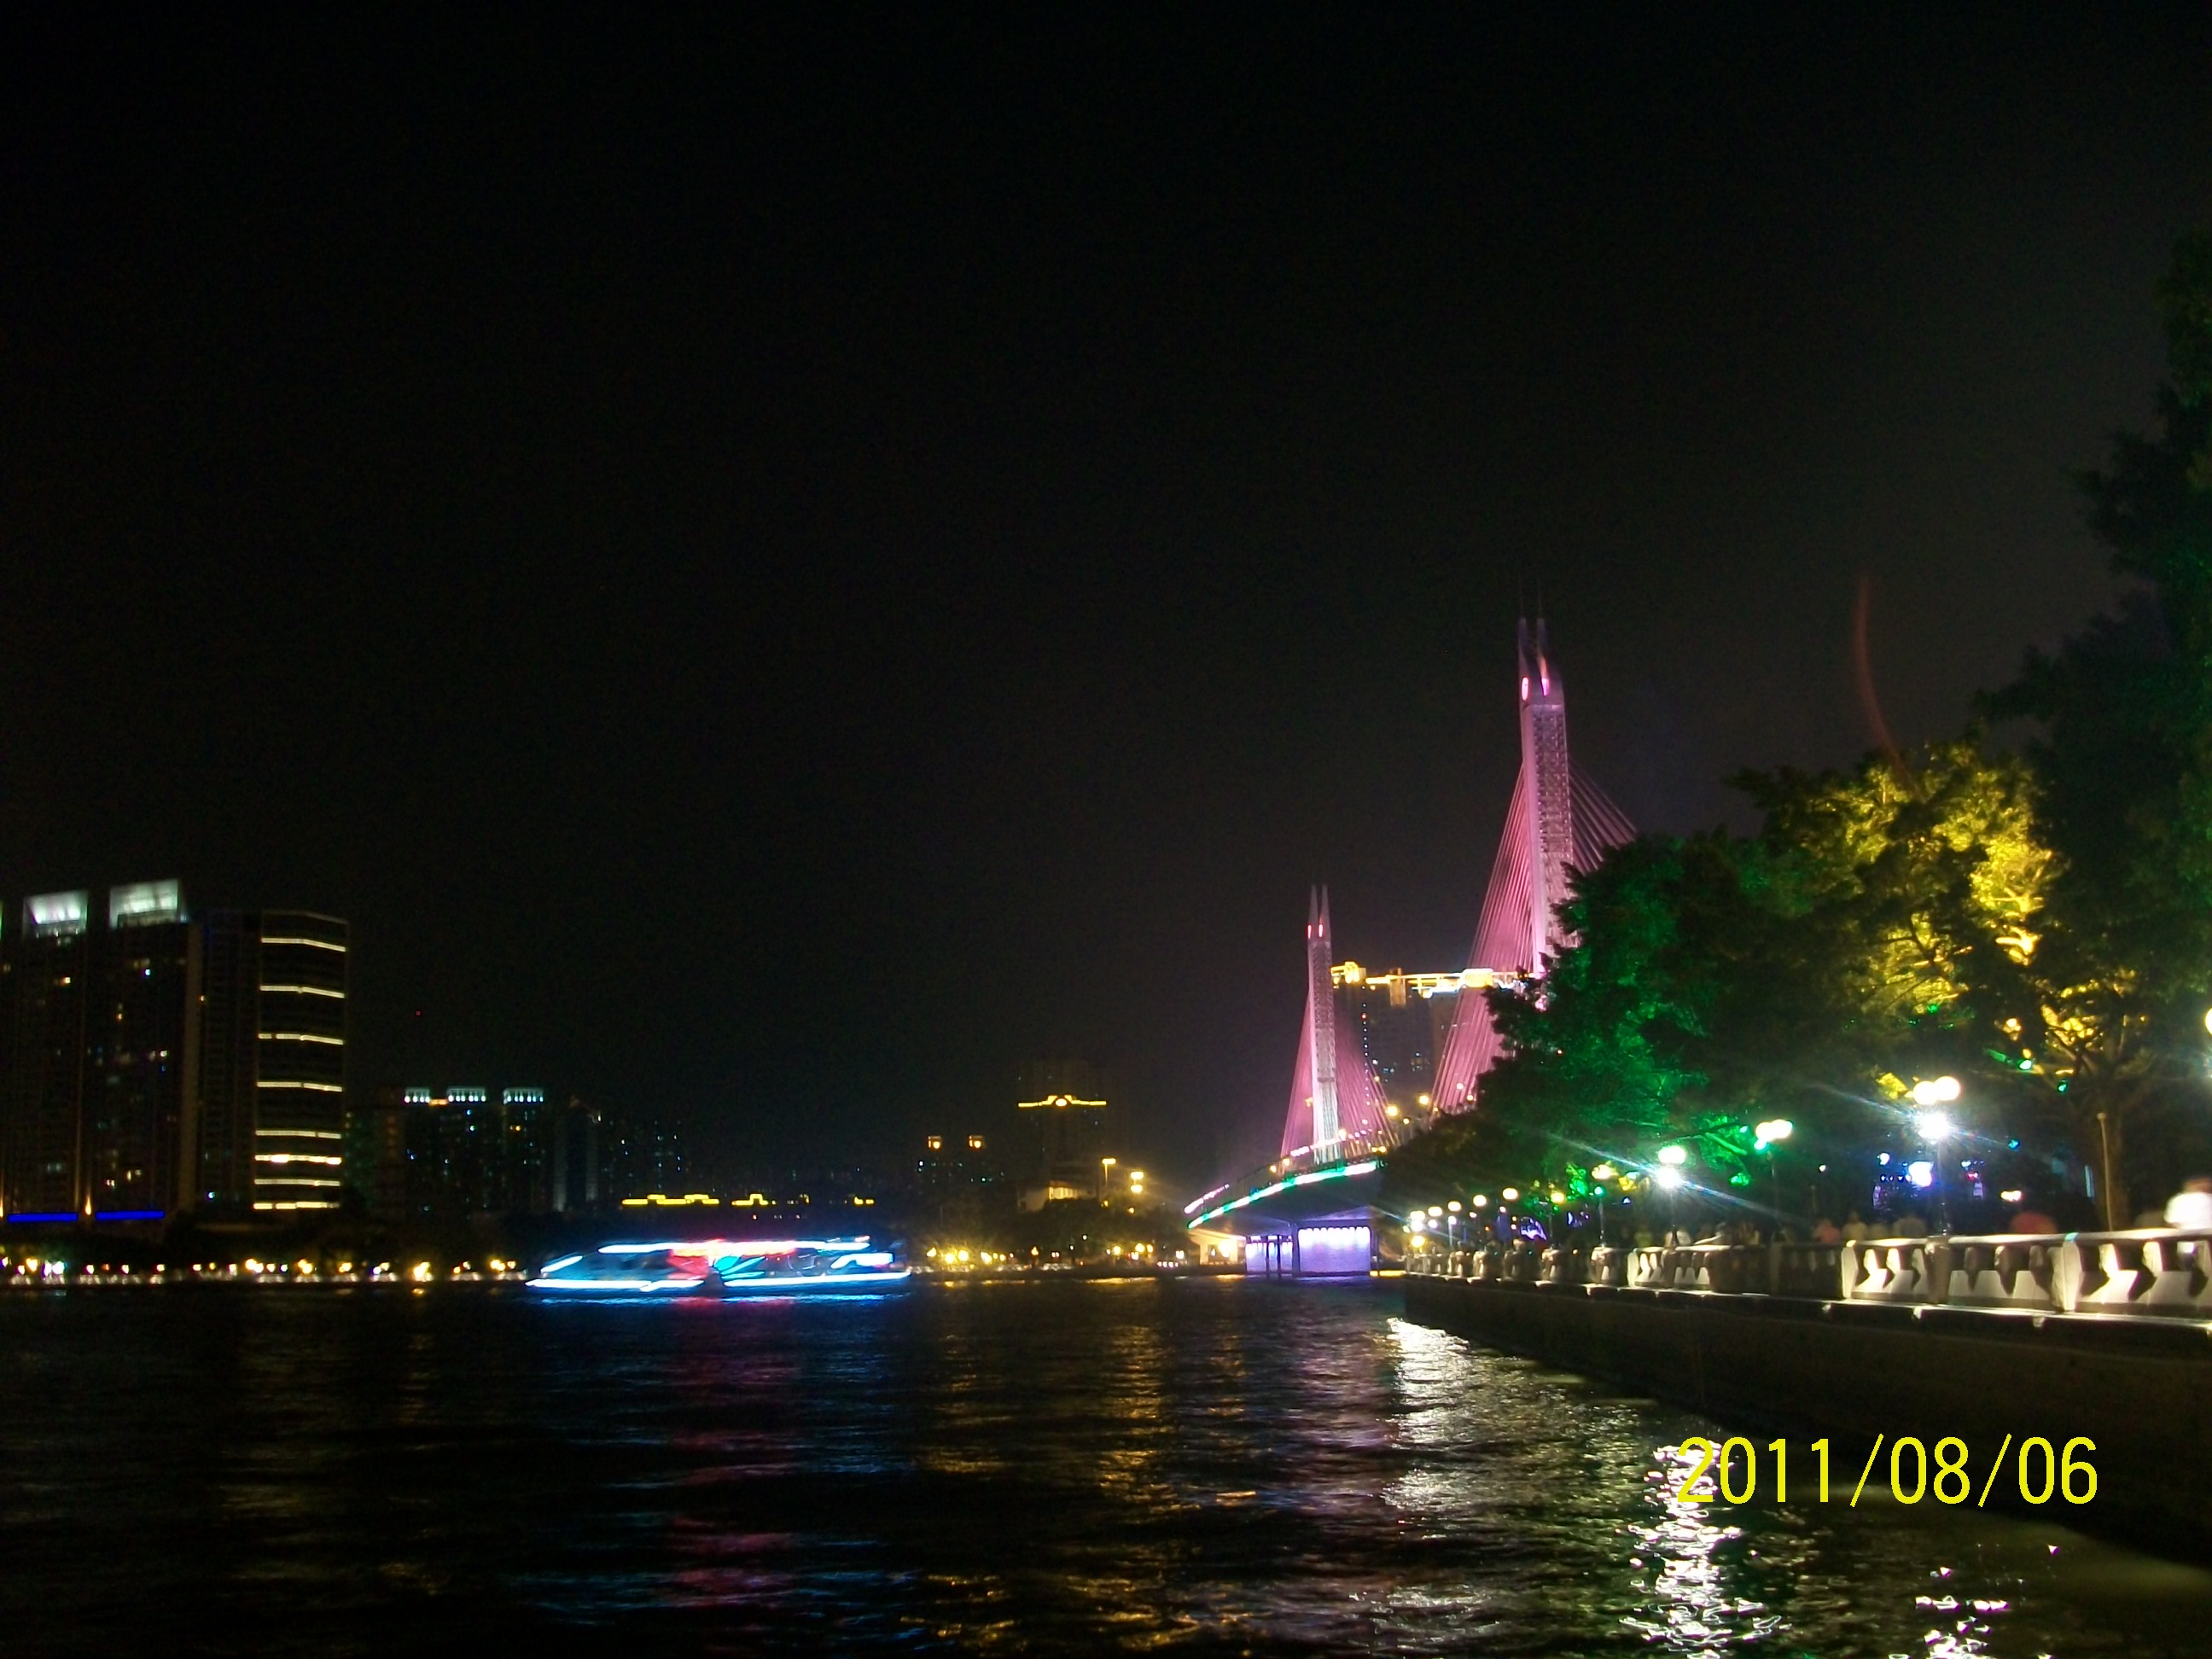 广州海印桥夜景935 / 作者:完美夏天 / 帖子ID:873